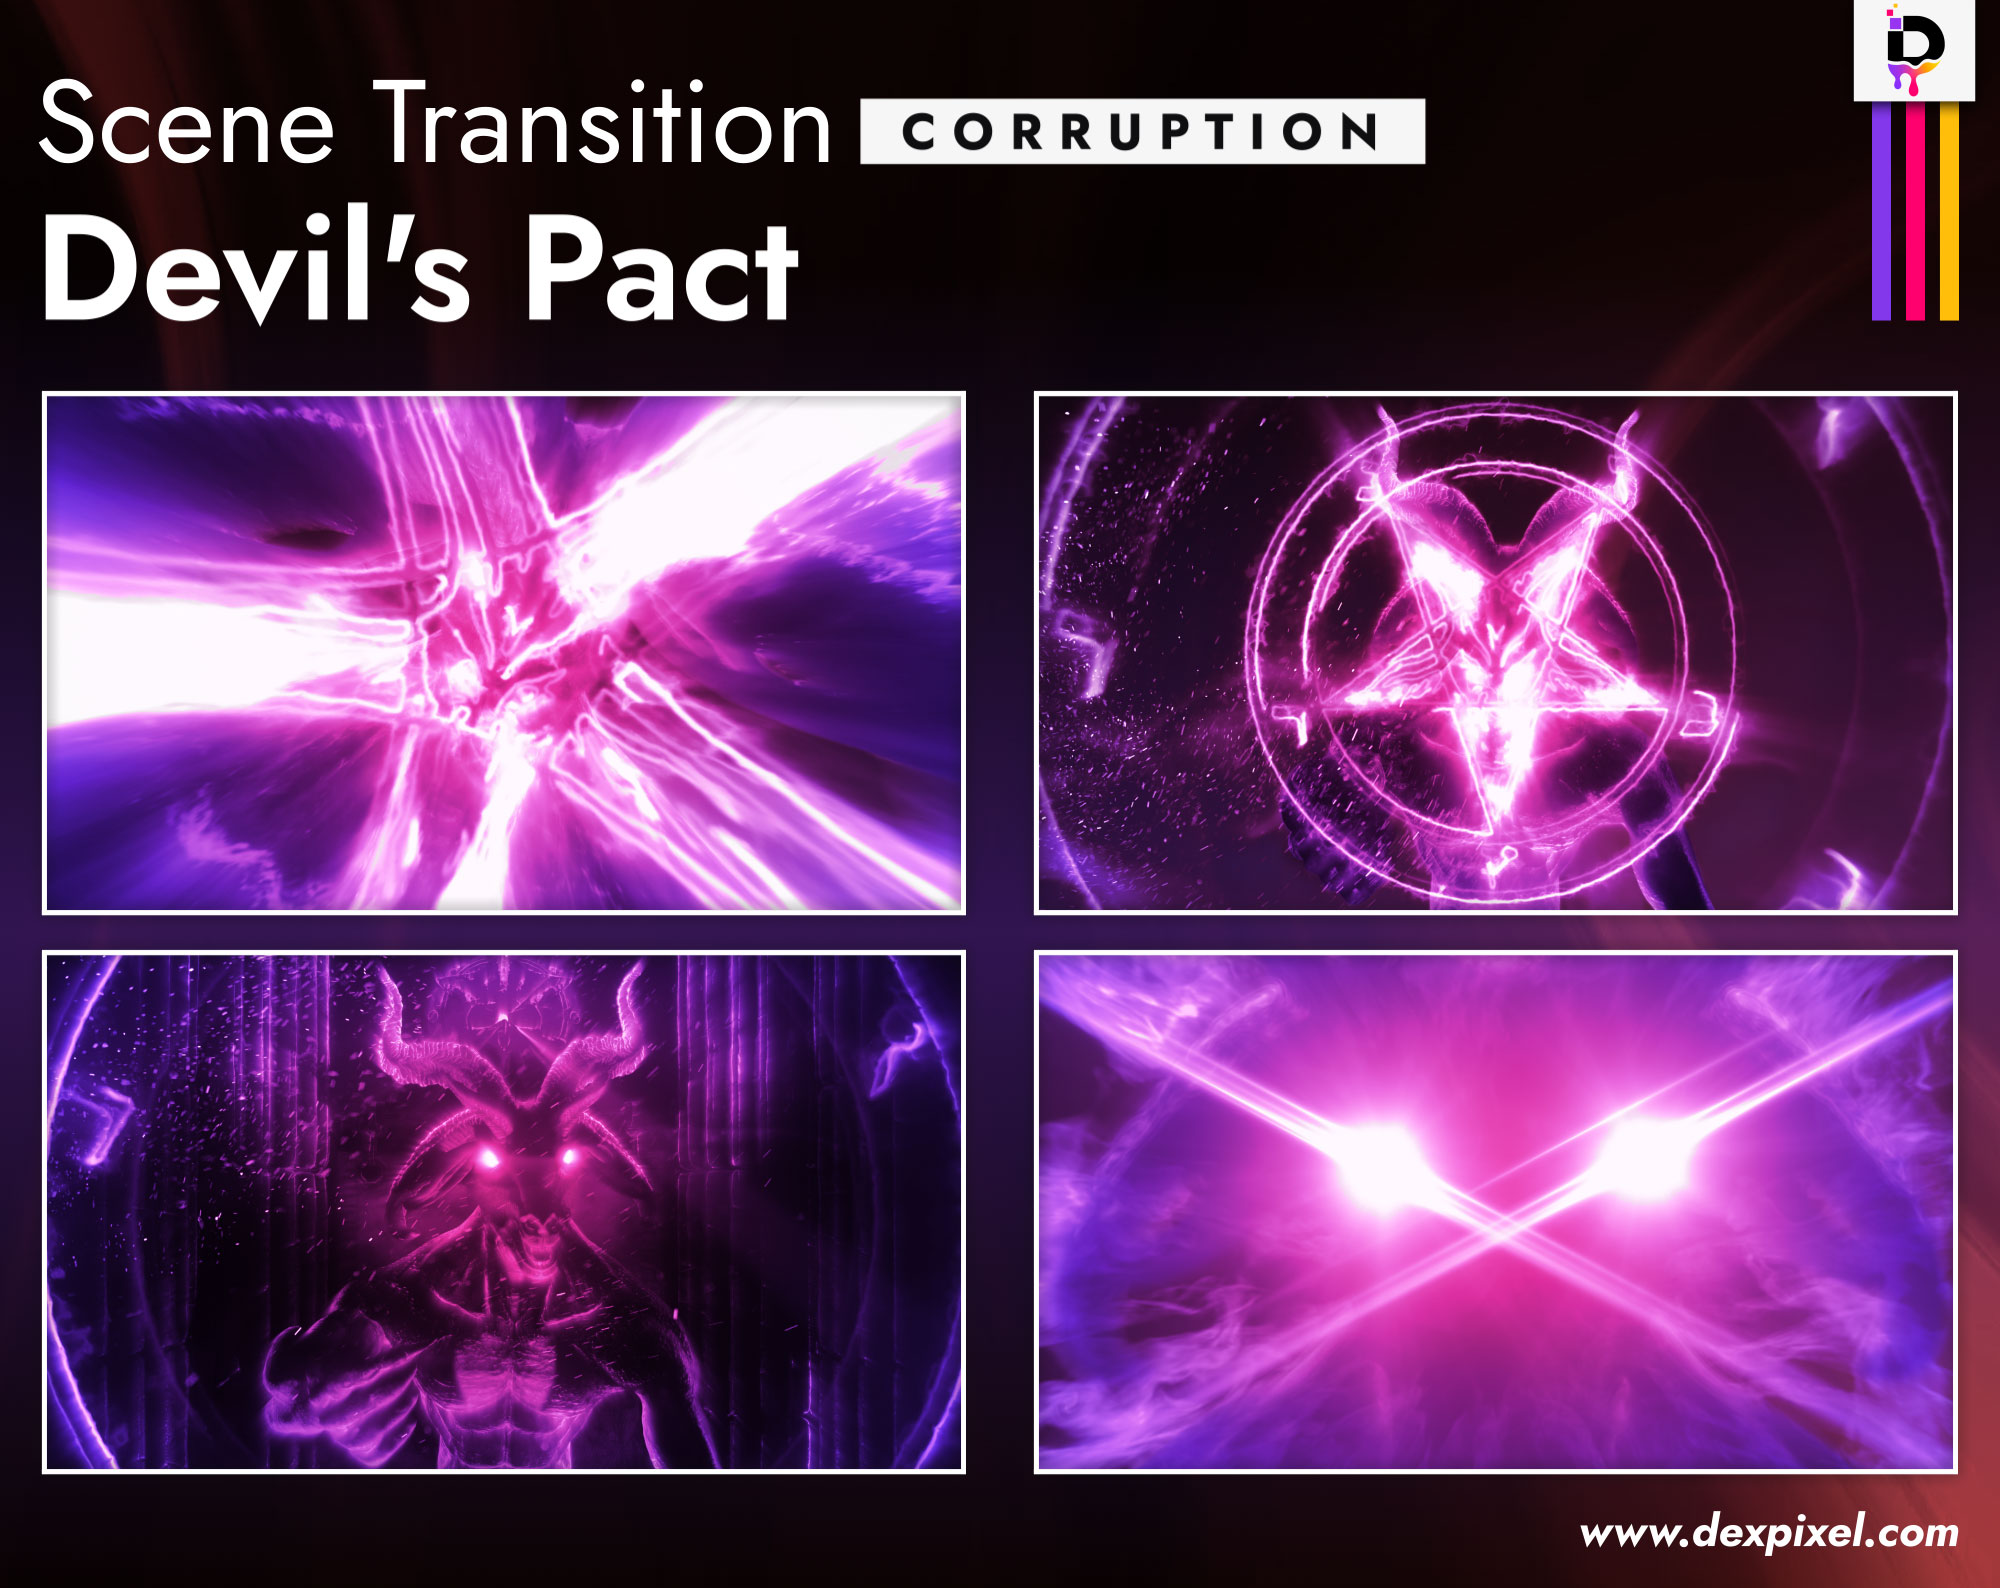 Scene Transition Dexpixel Thumbnail Devils Pact Corruption